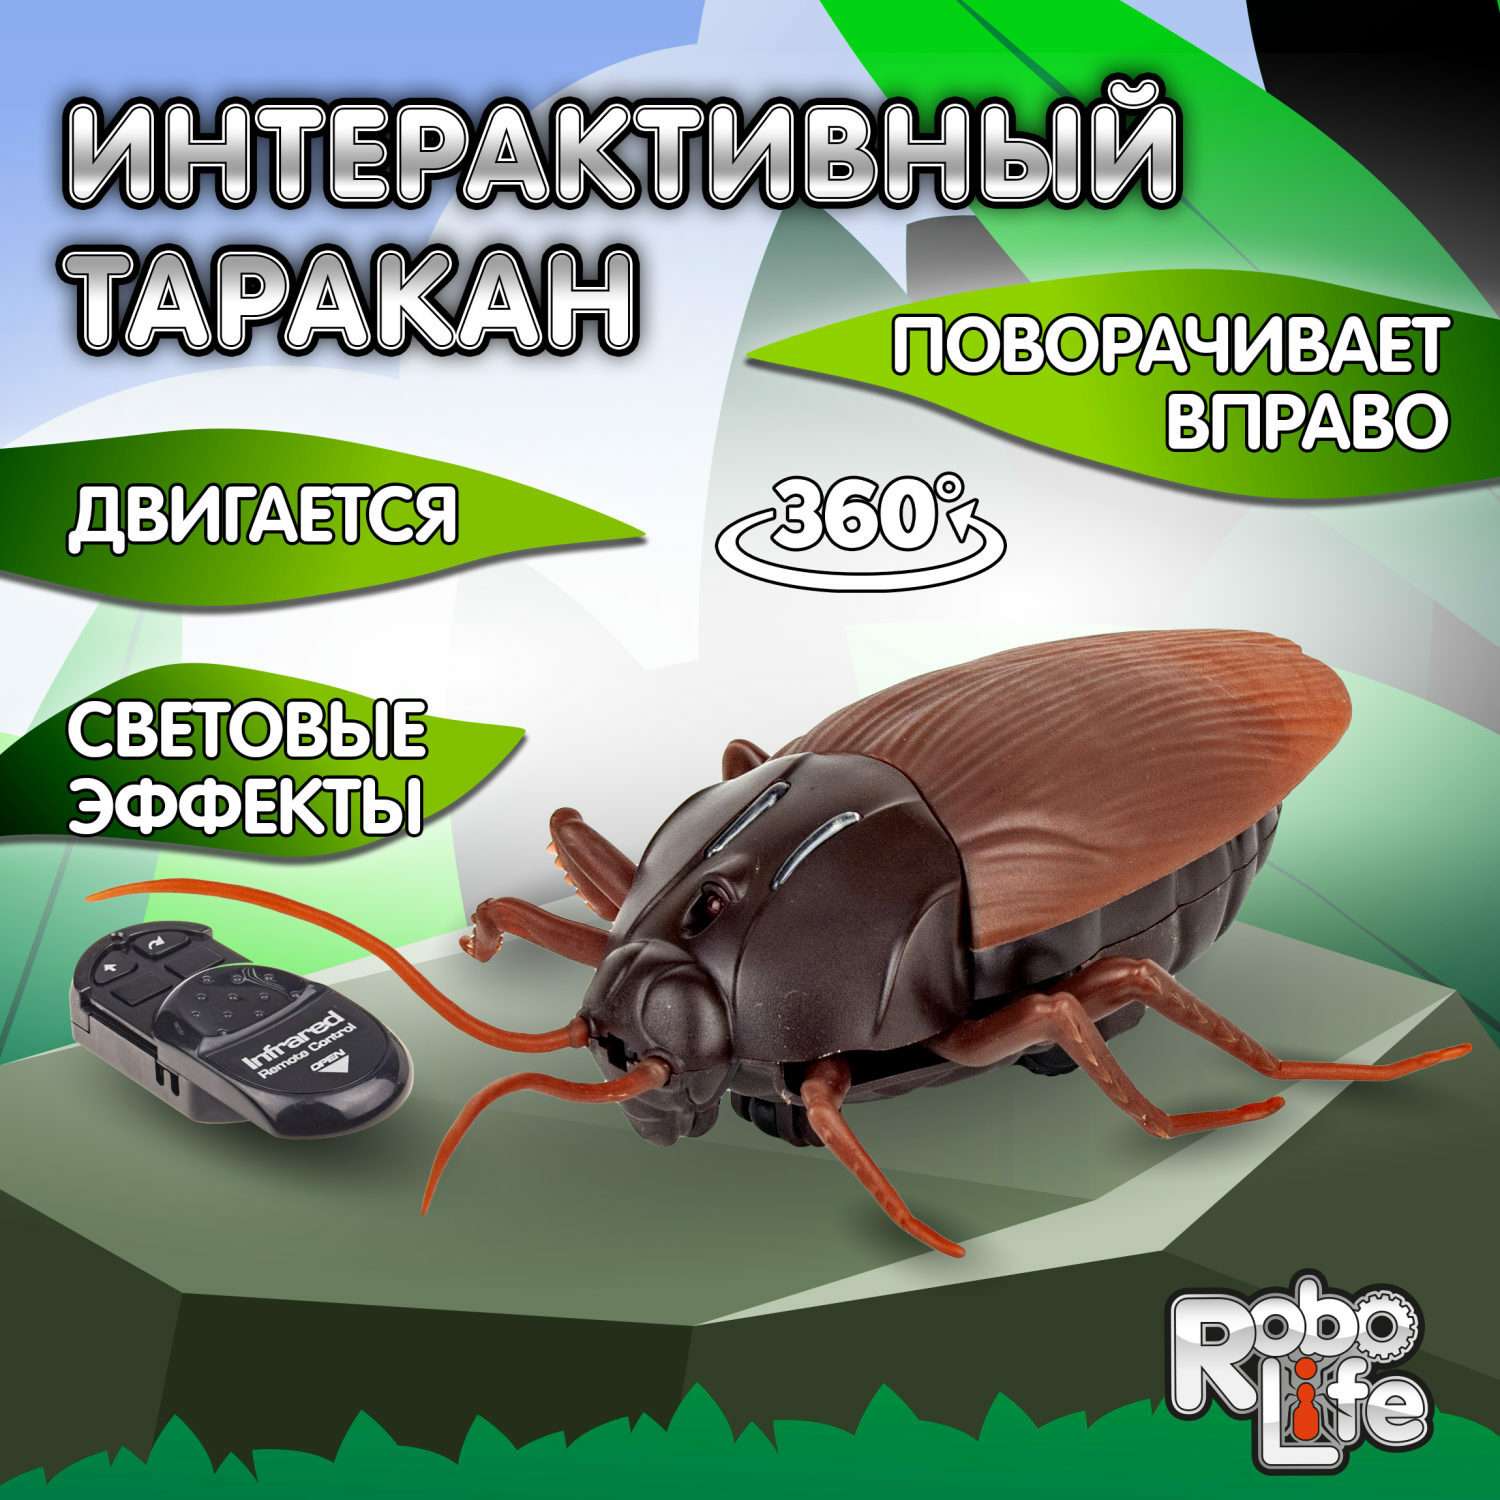 Интерактивная игрушка Robo Life Робо-таракан на ИК управлении со световыми эффектами - фото 1